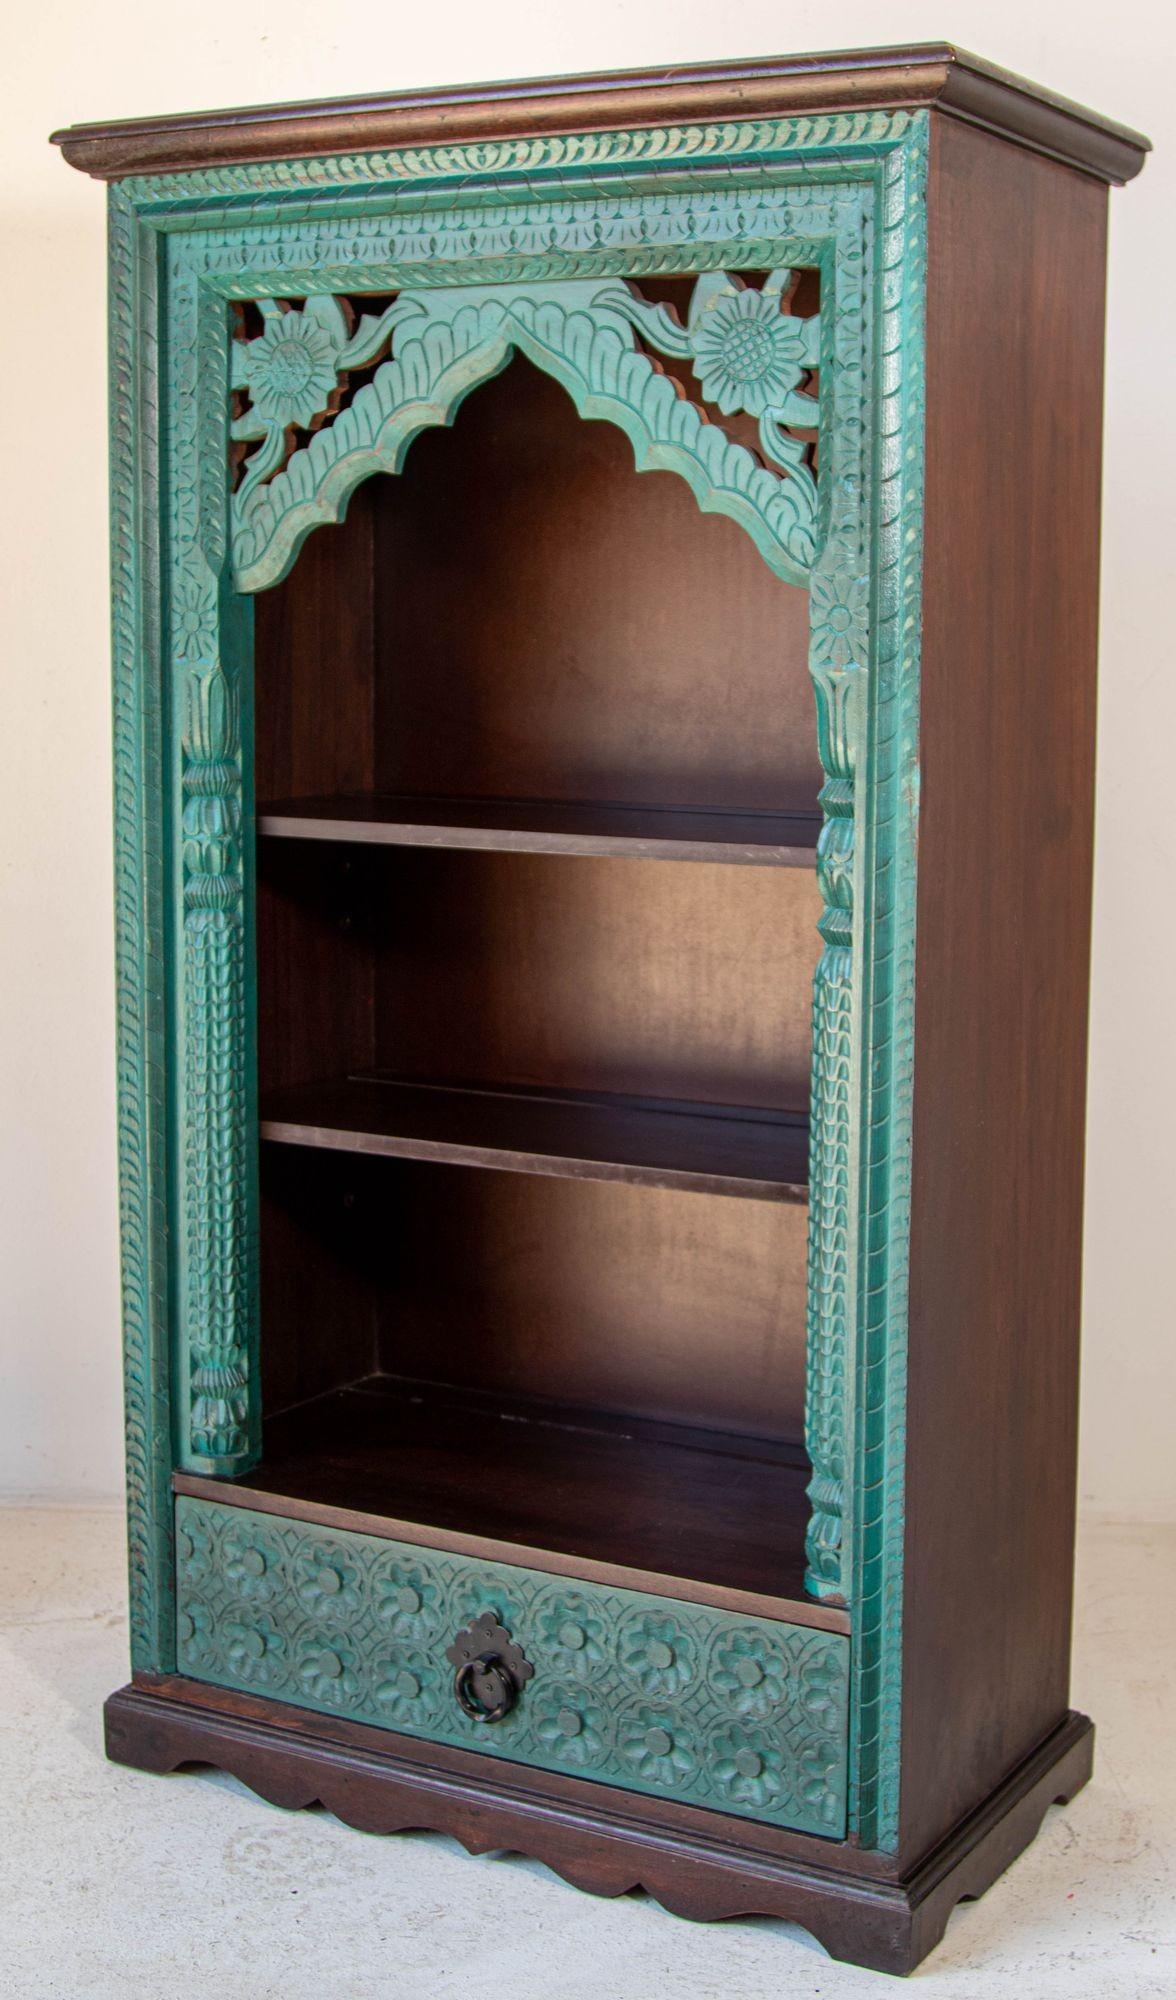 Vintage Hand-Carved Arch Bookshelf Wooden Cabinet in Rustic Blue antique distressed look.
Bibliothèque en arche peinte en bleu avec une finition vieillie.
Vitrine traditionnelle et authentique en bois indien sculpté à la main avec une finition en